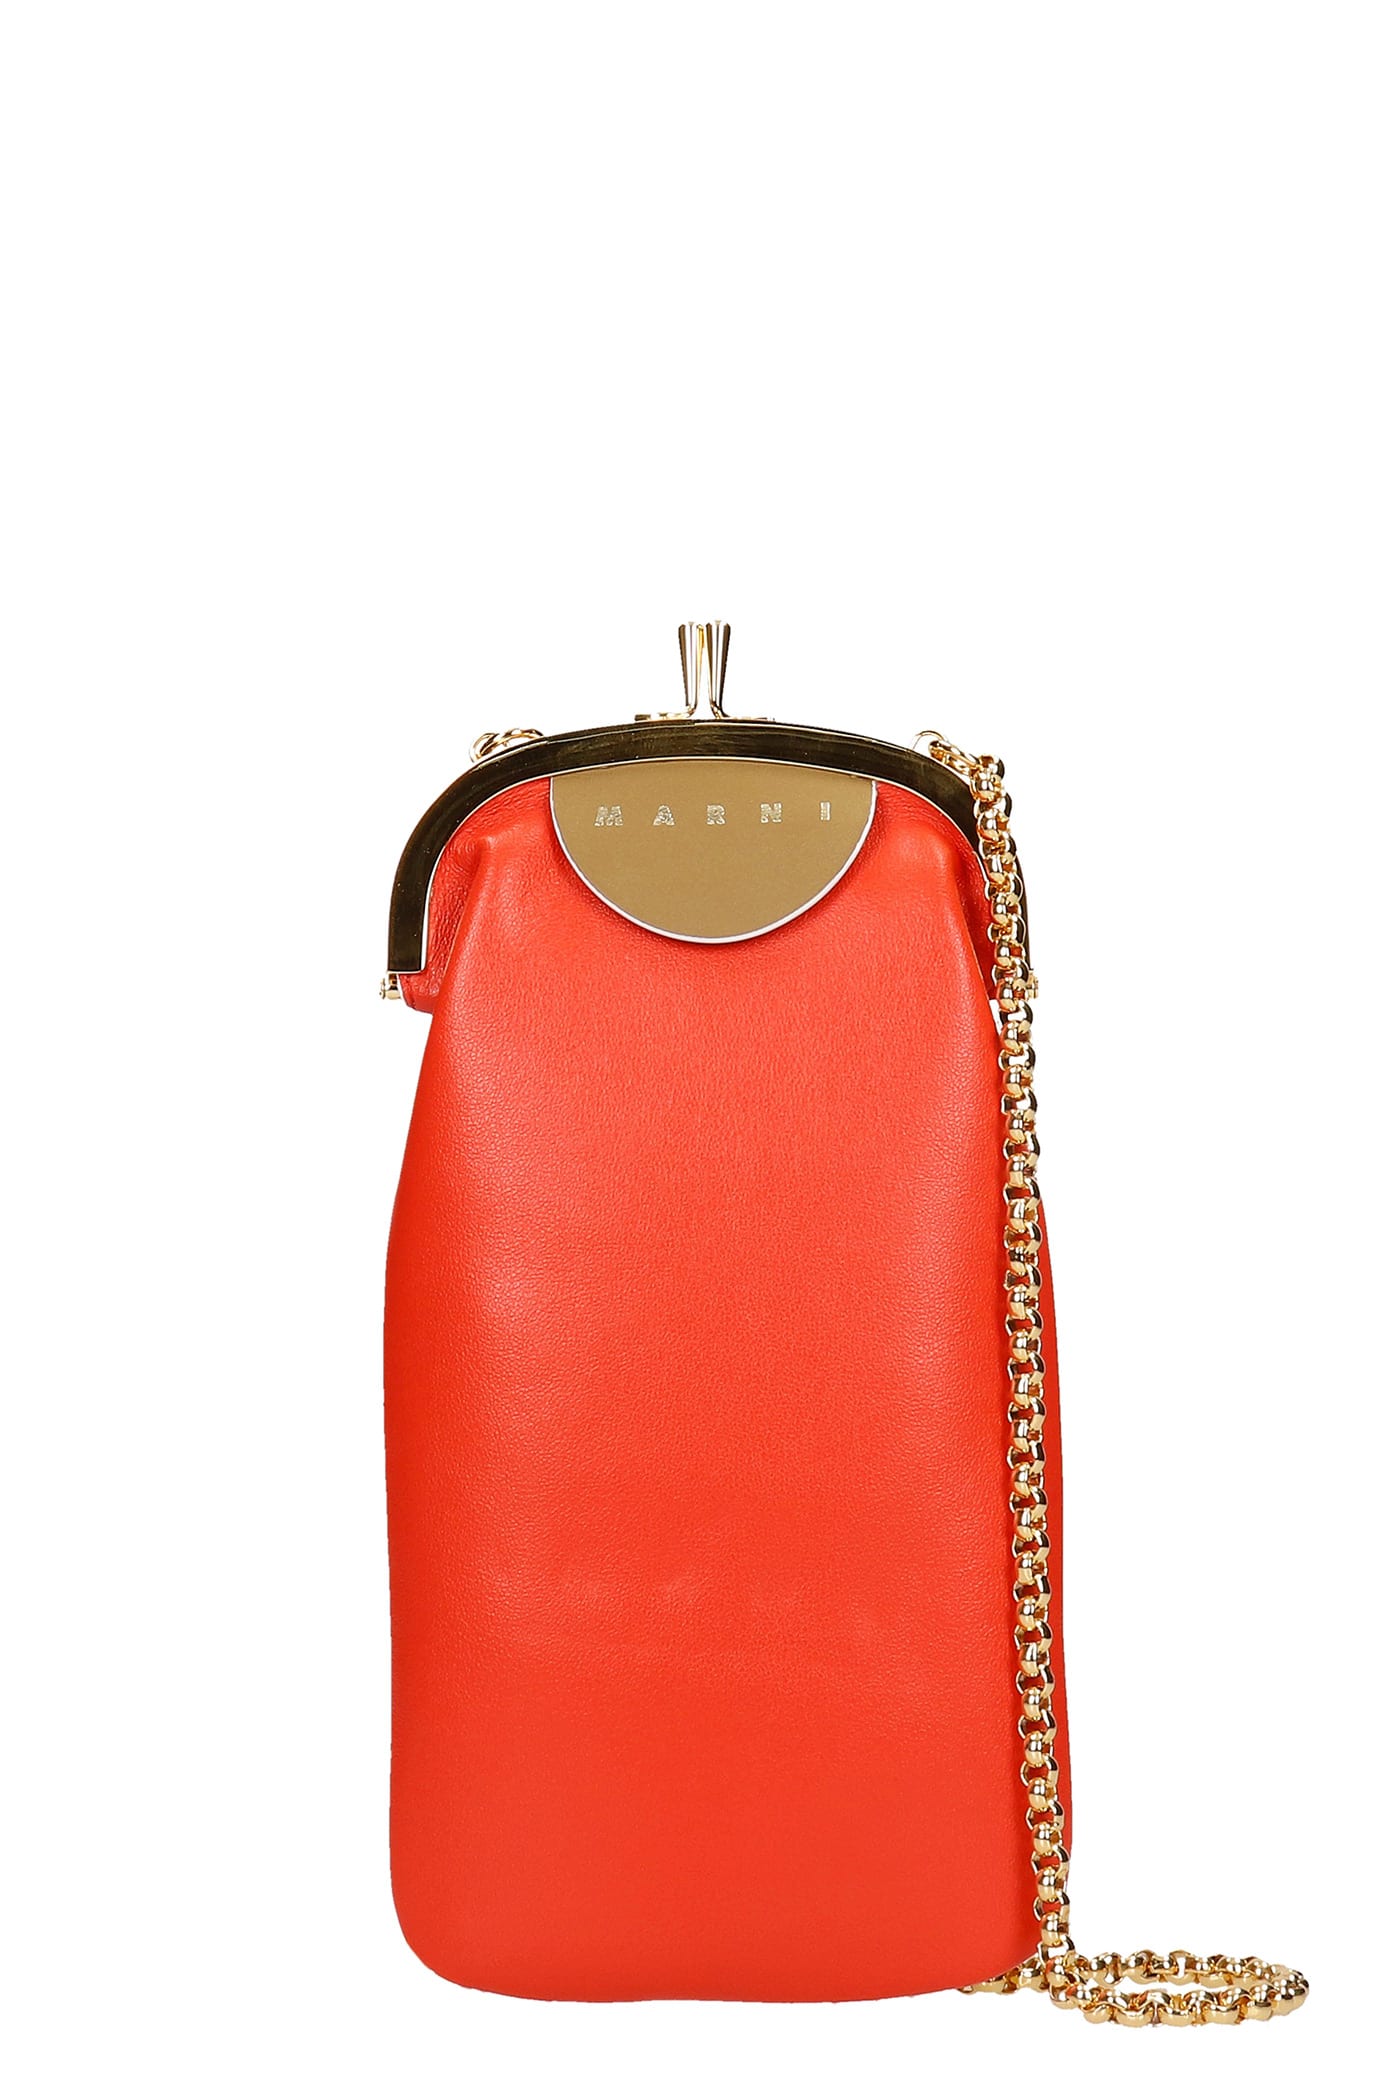 Marni Shoulder Bag In Red Leather